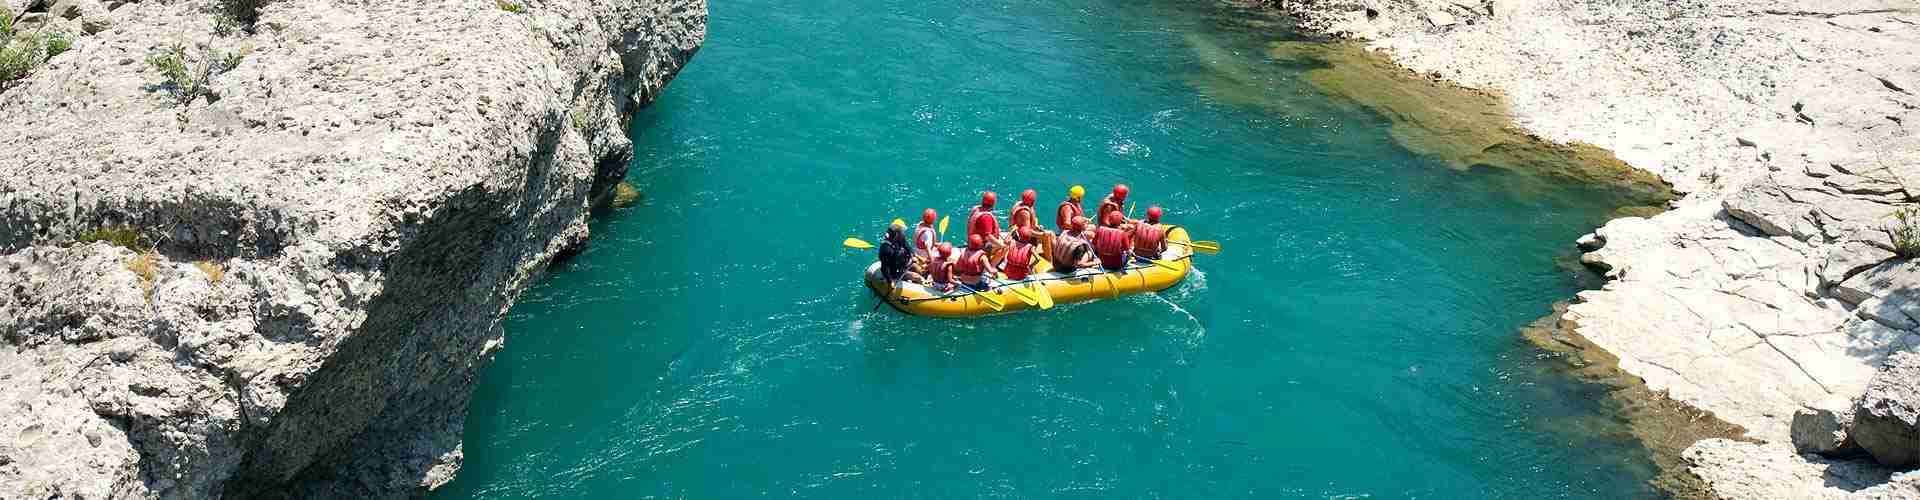 Rafting en Peguera del Madroño